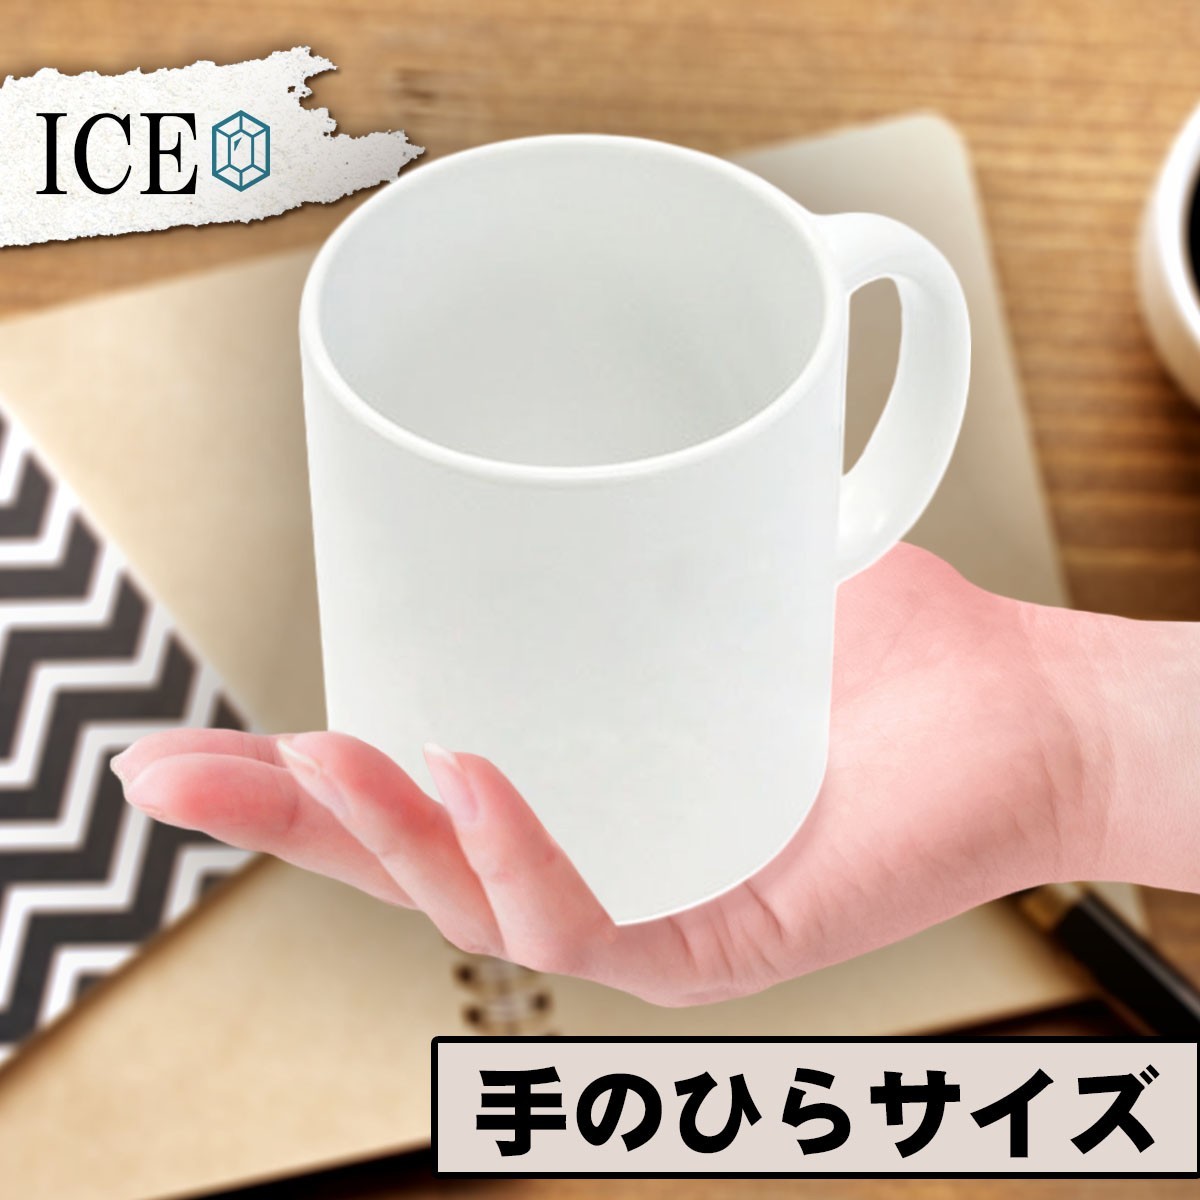 ナマコ おもしろ マグカップ コップ なまこ 赤ナマコ 青ナマコ 魚介類 手書き 米 陶器 可愛い かわいい 白 シンプル かわいい カッコイイ_画像2